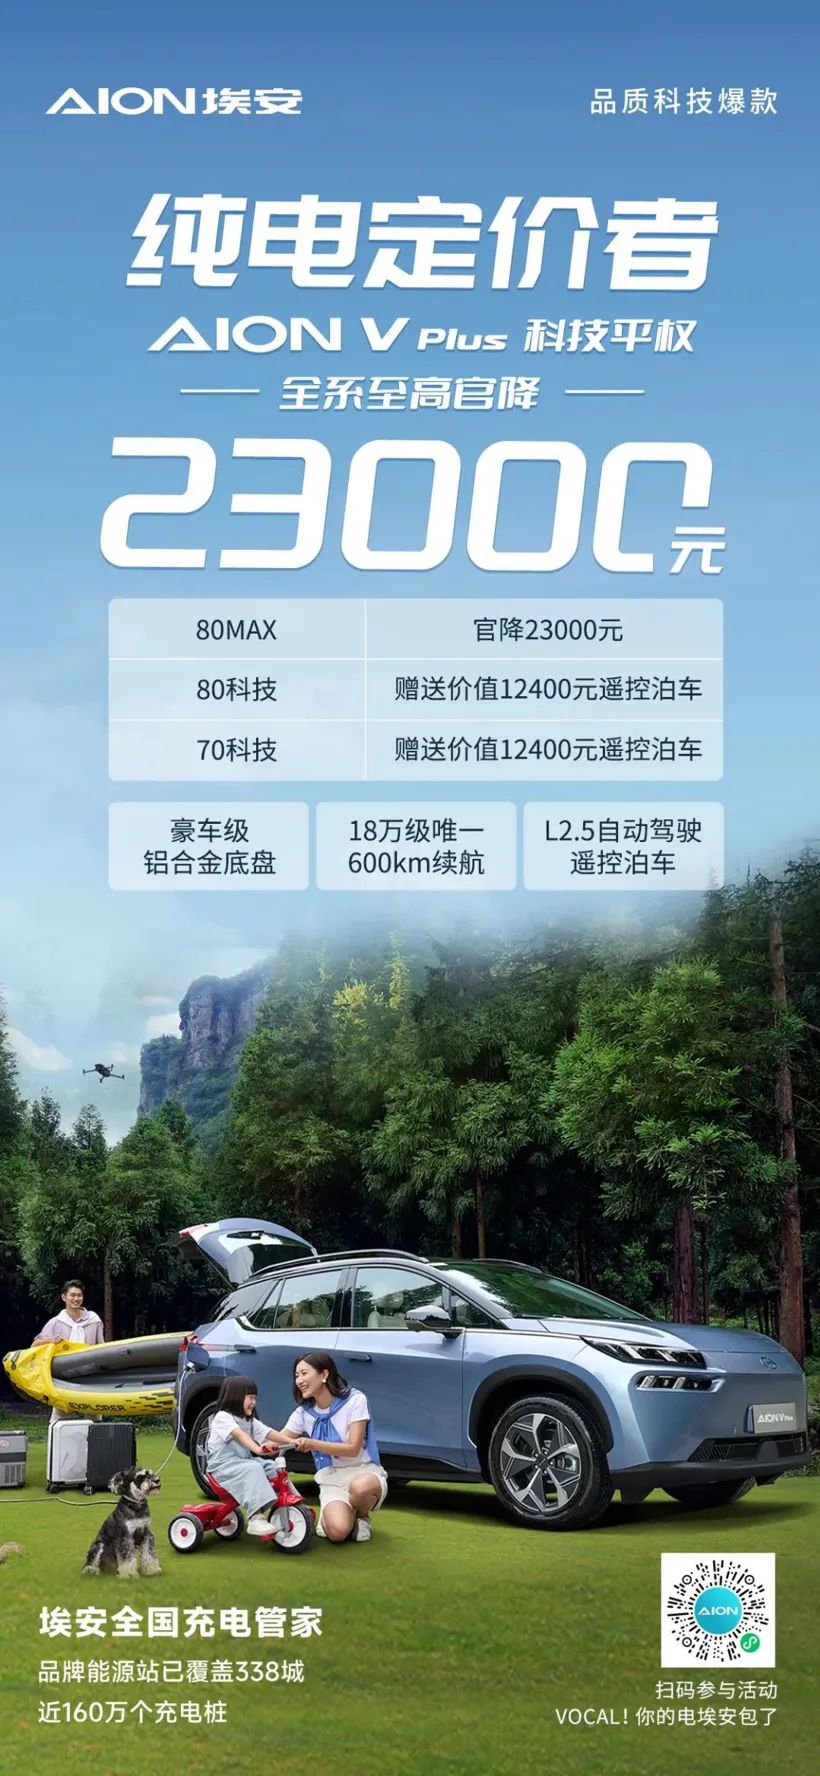 Alle GAC Aion V Plus-serier er prissat til RMB 23.000 for den højeste officielle pris